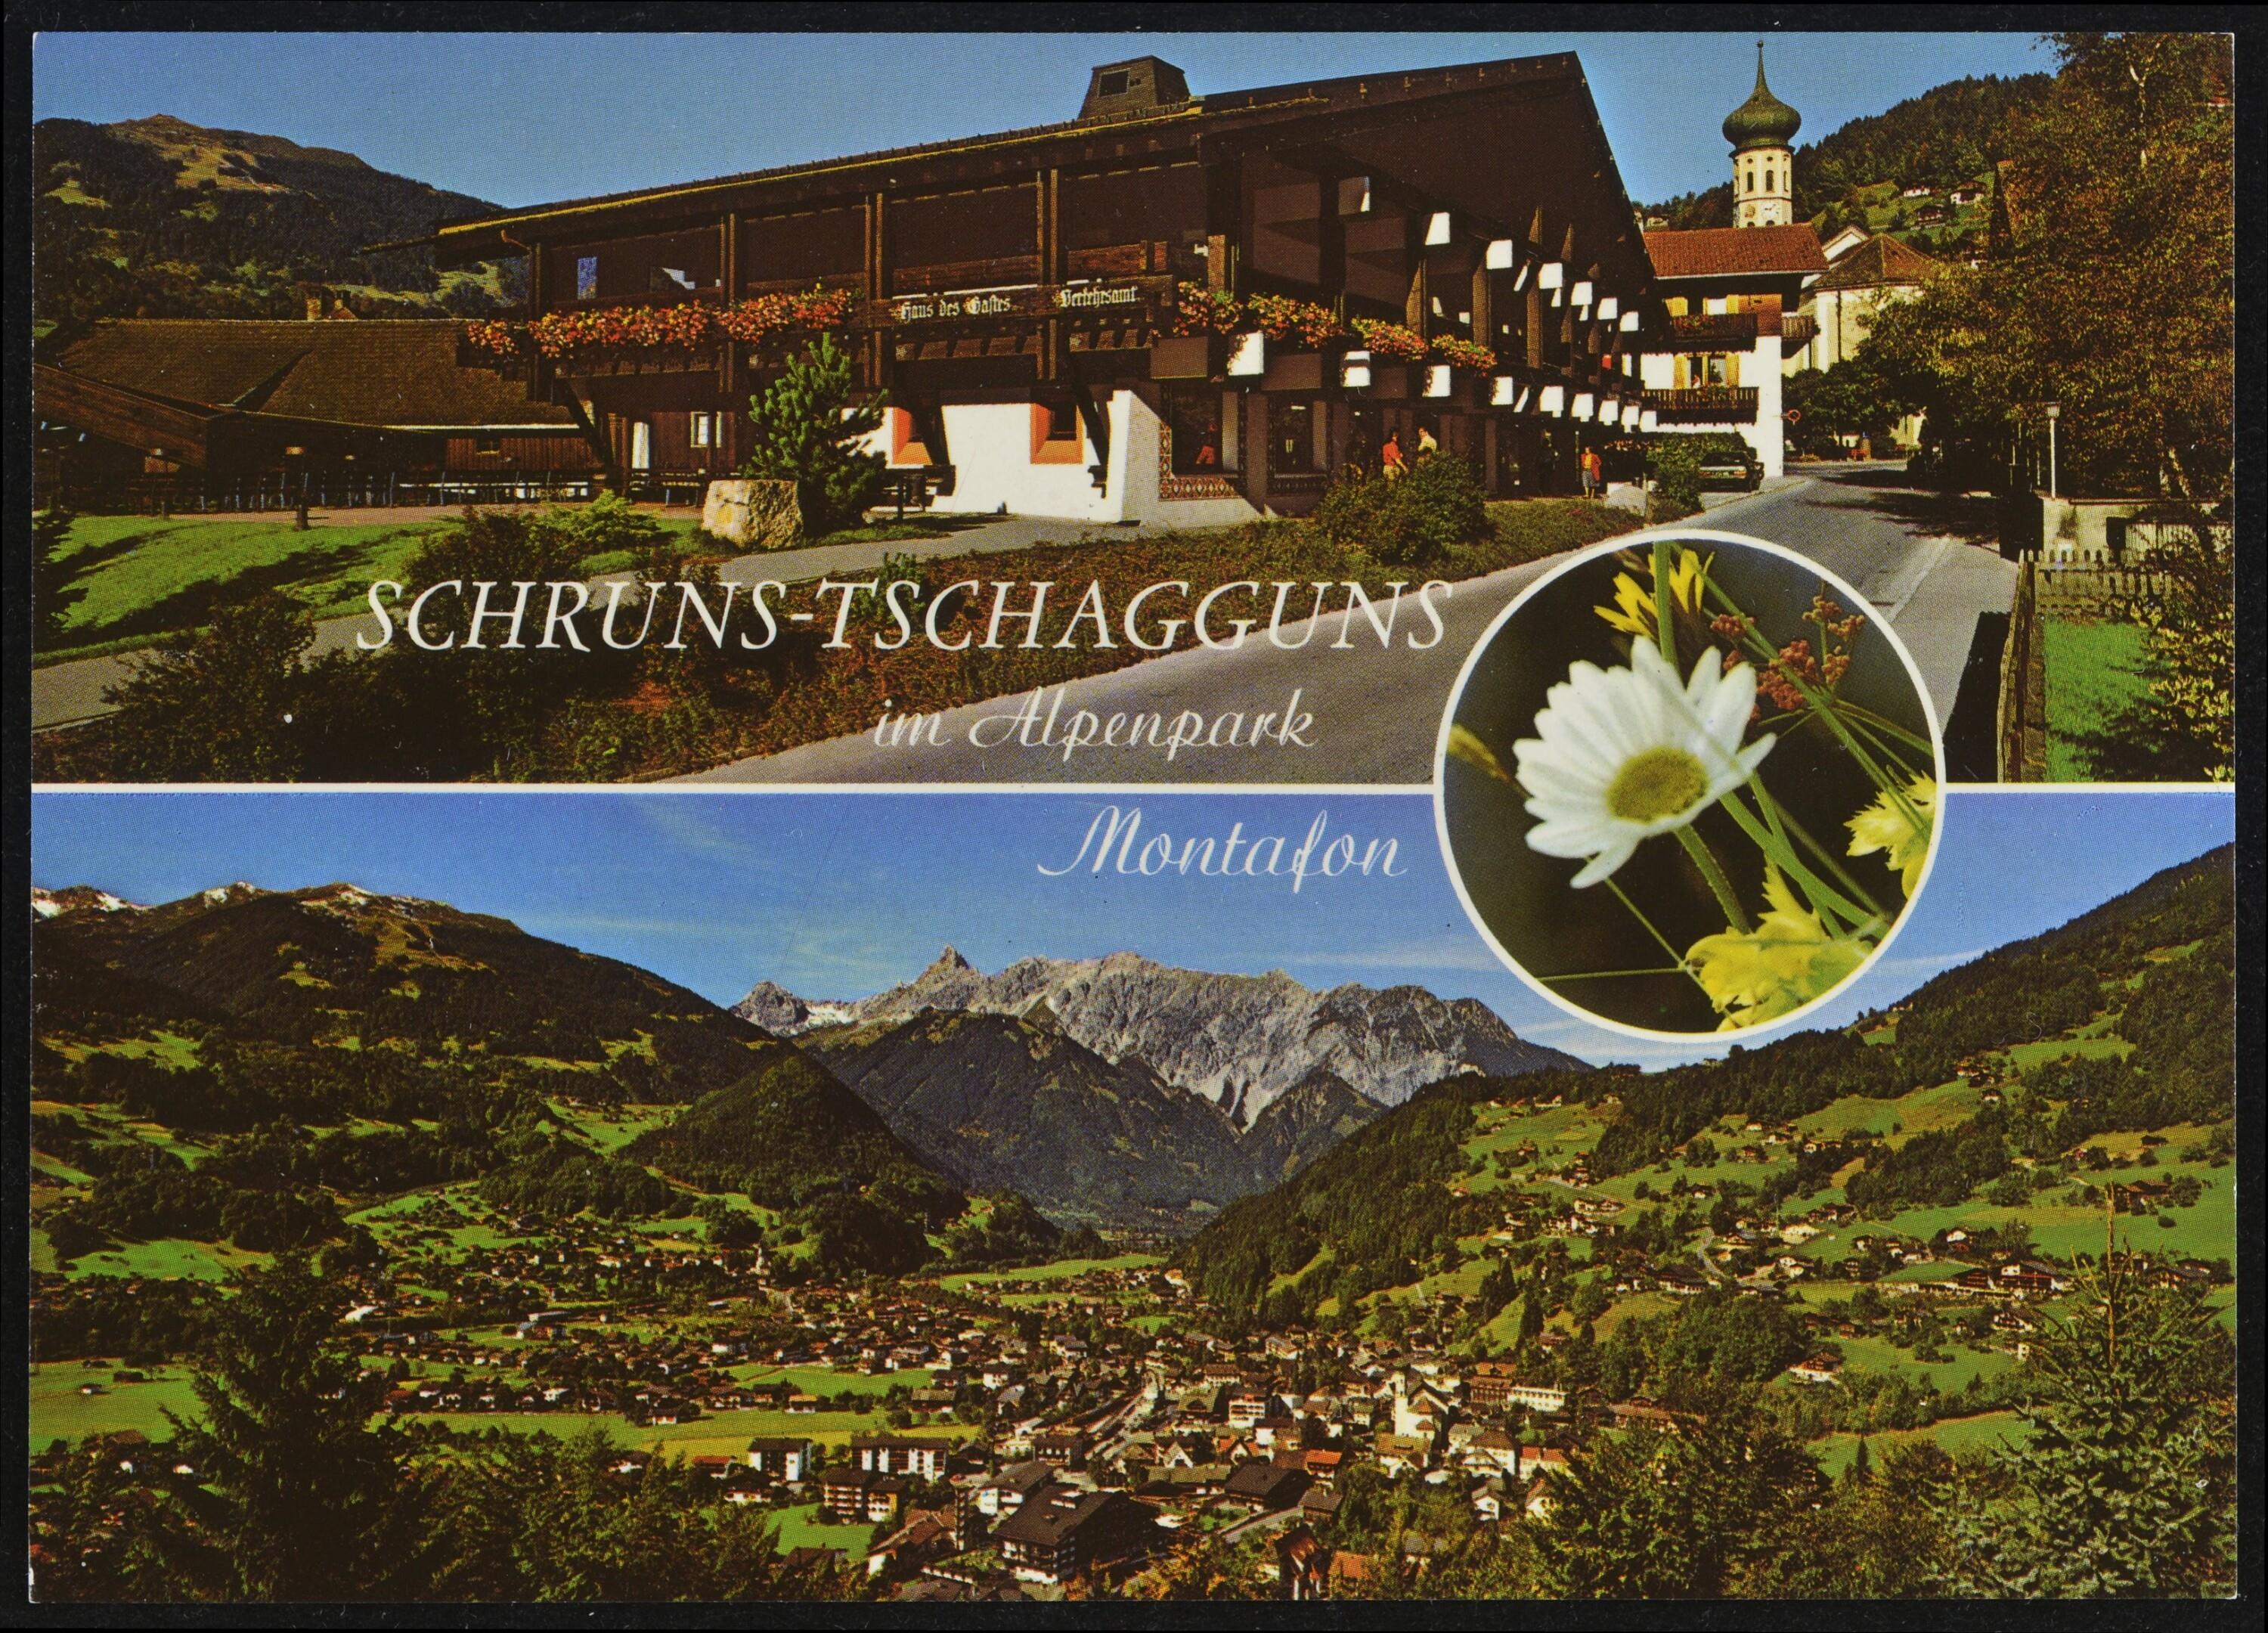 Schruns-Tschagguns im Alpenpark Montafon></div>


    <hr>
    <div class=